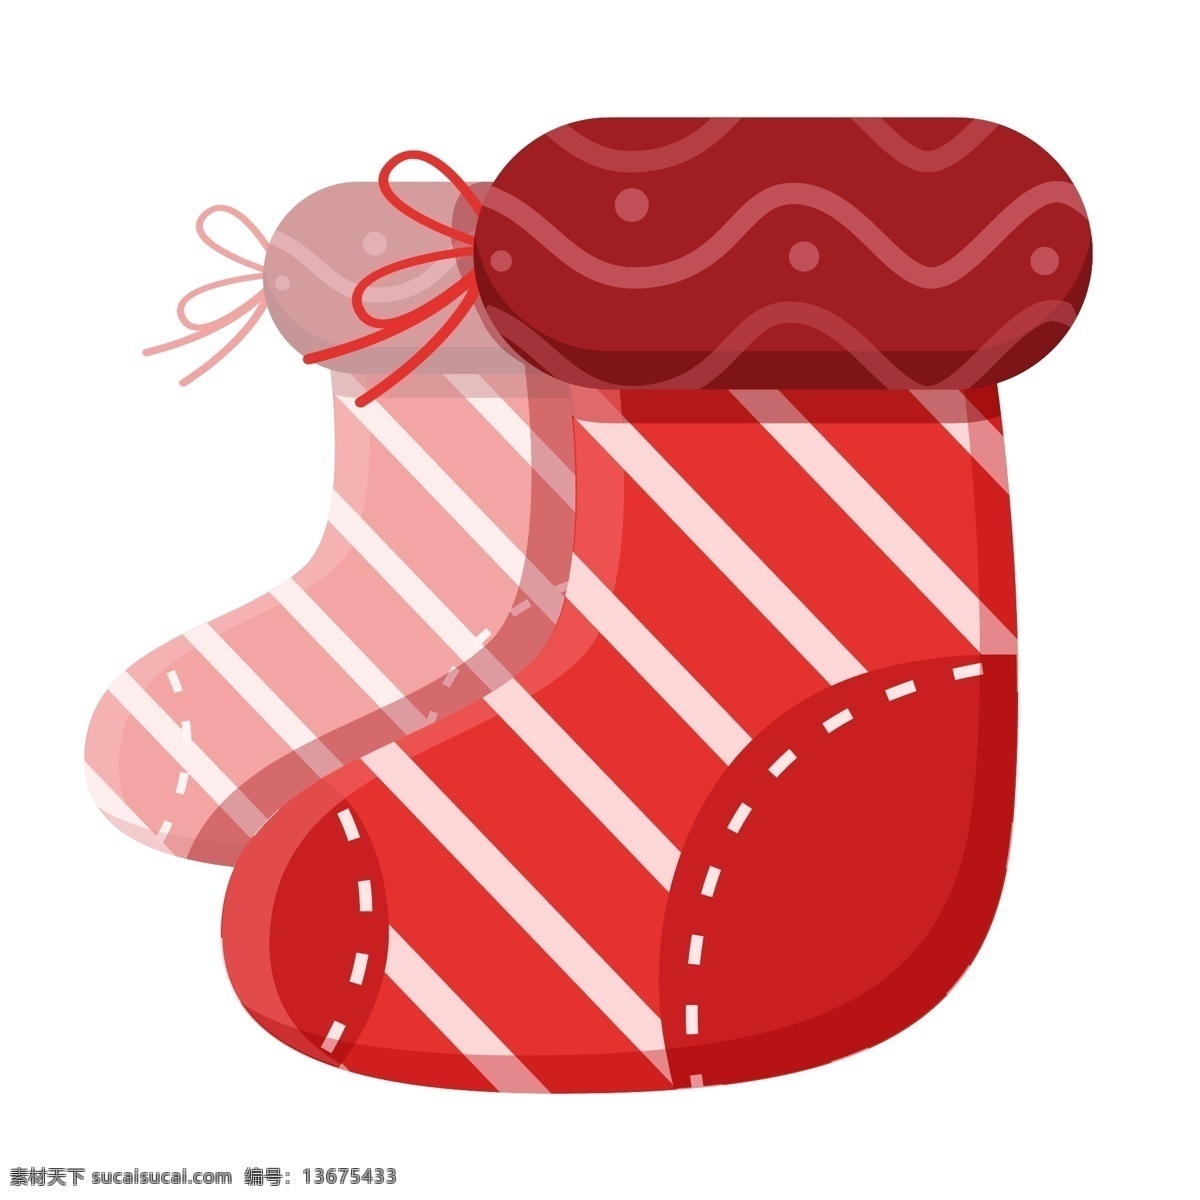 条纹 微星 扁平 大红色 圣诞节 袜子 矢量 庆典 元素 周边 可爱 圣诞 袜 高清 卡 伊